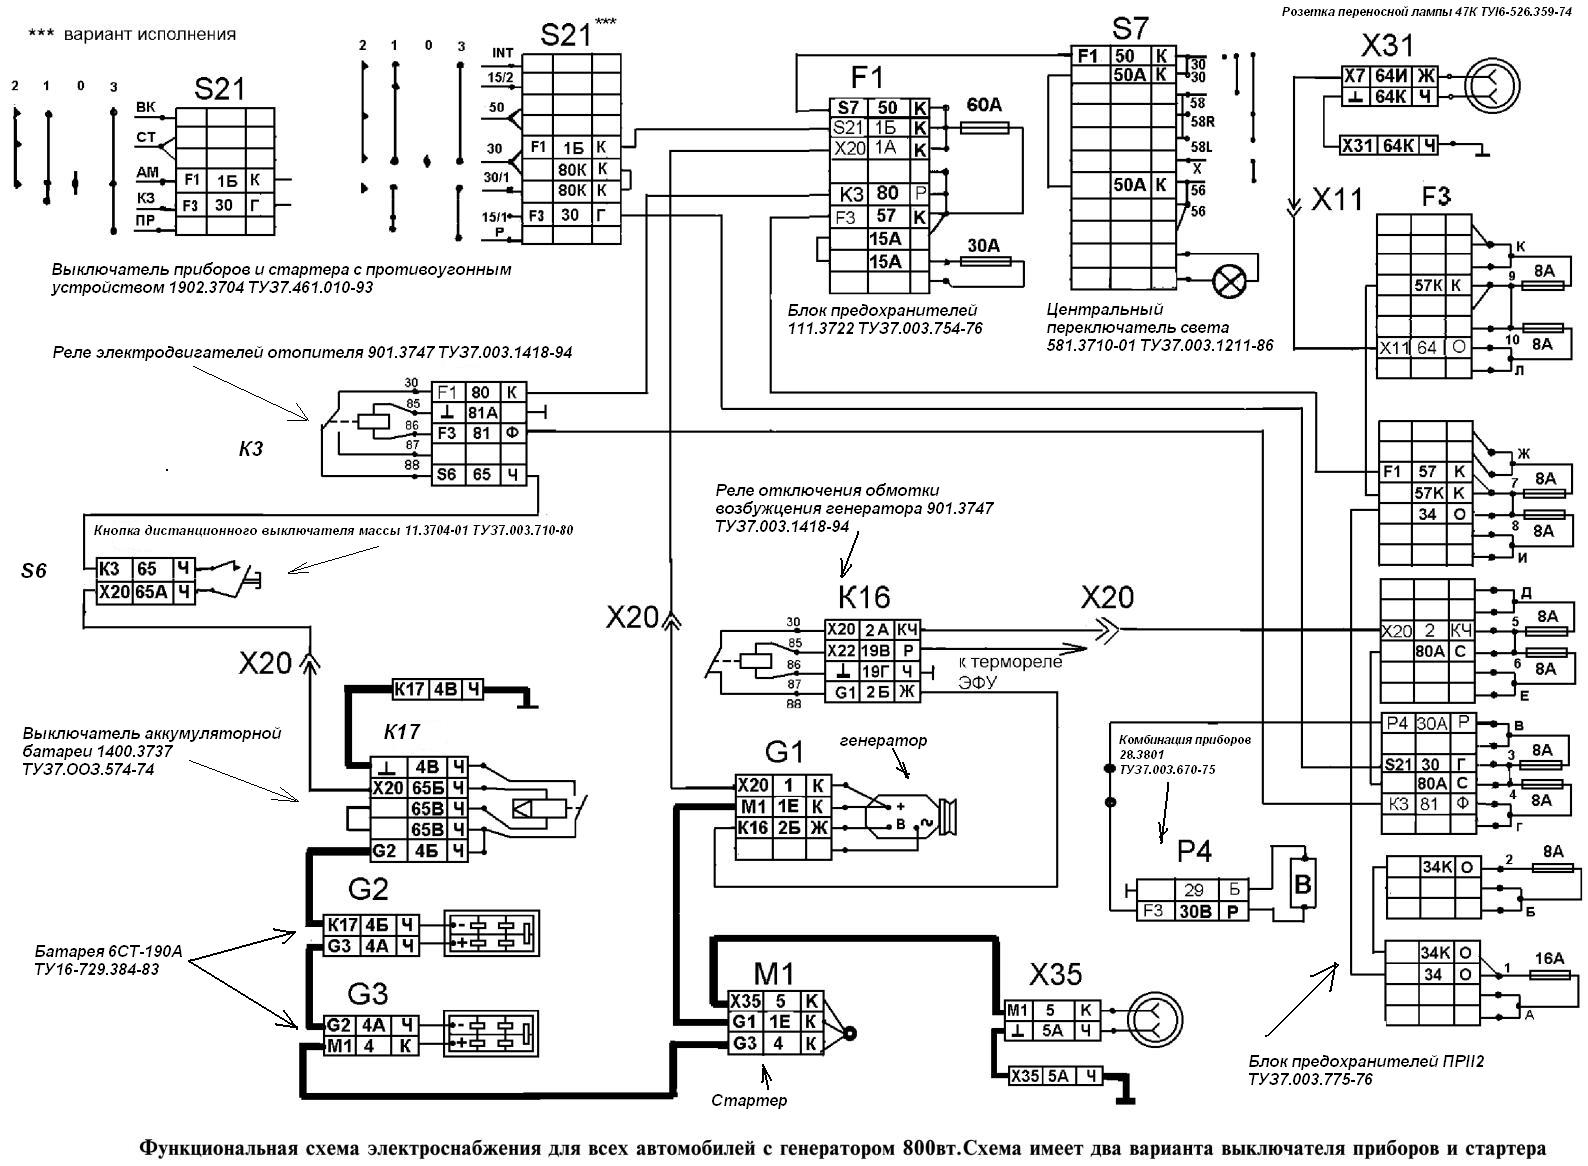 схема электроснабжения для автомобилей КамАЗ с генератором 800 вт